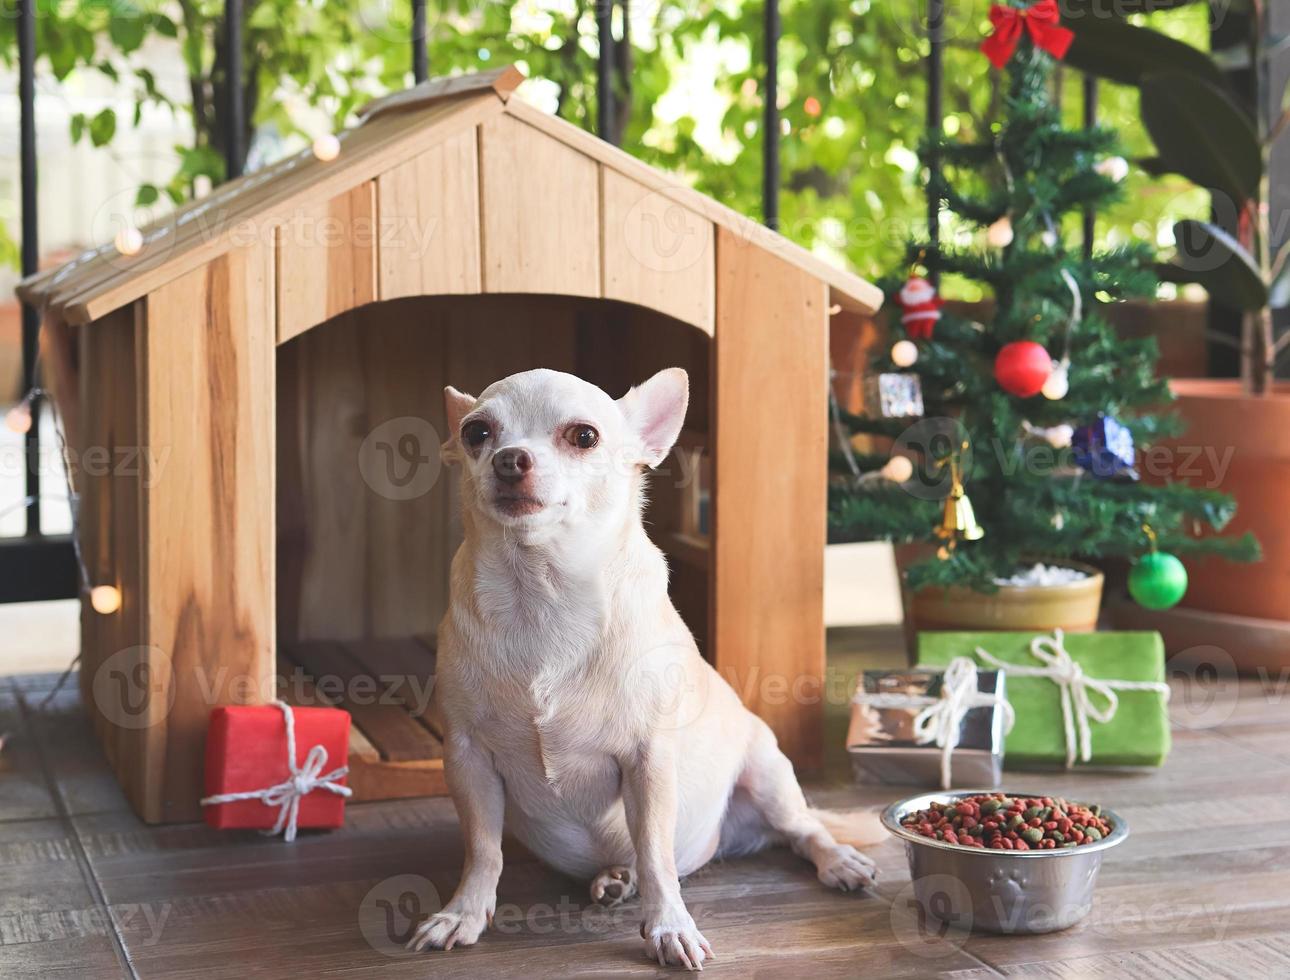 Chihuahua-Hund mit kurzen Haaren, der vor einem hölzernen Hundehaus mit Hundefutternapf, Weihnachtsbaum und Geschenkboxen sitzt und in die Kamera blickt. foto